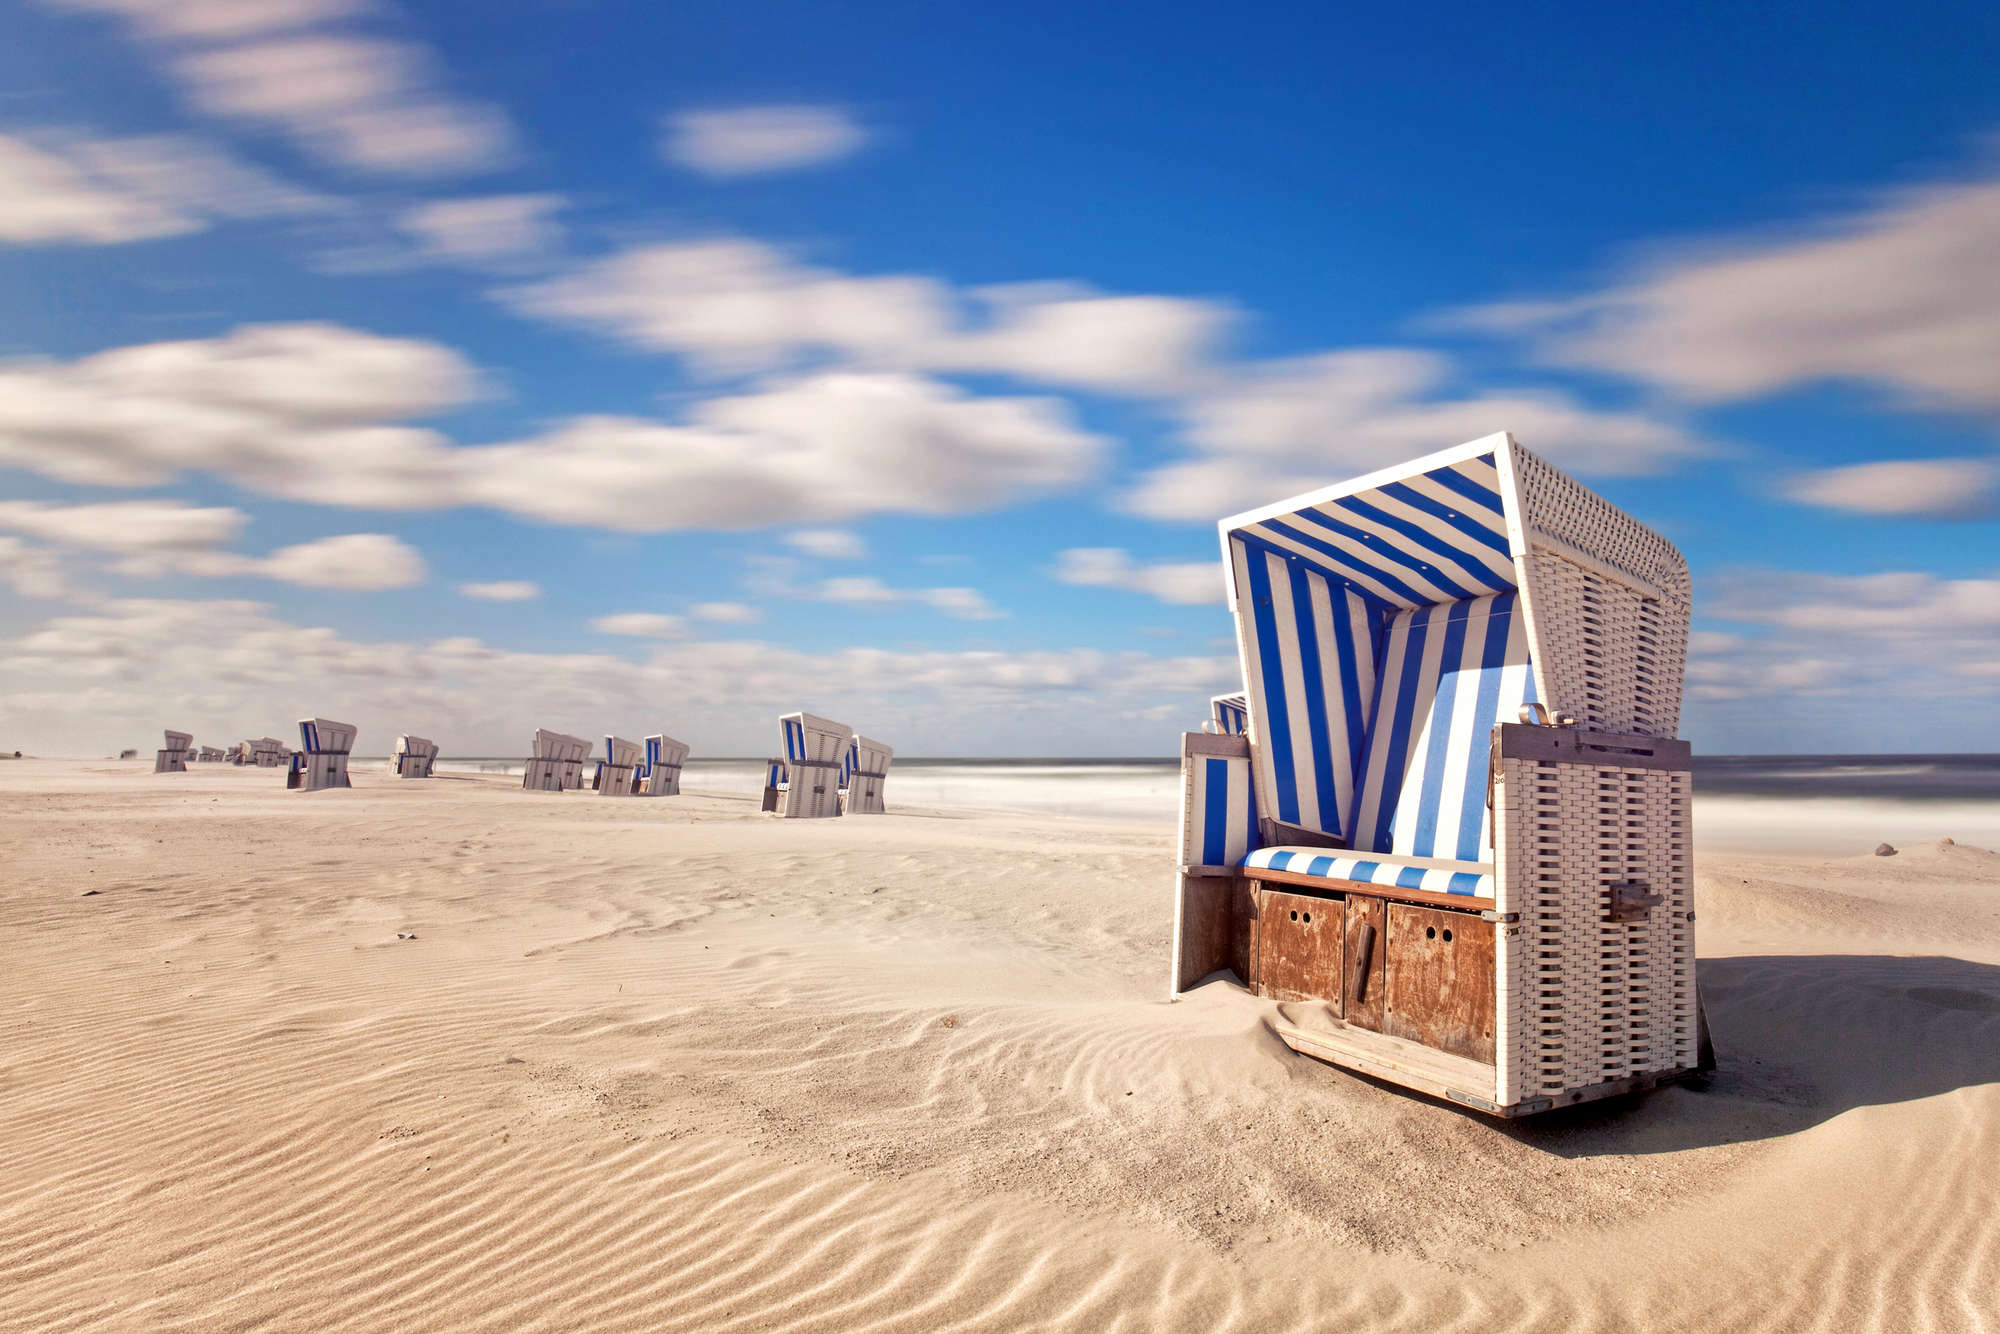             Mural de la playa sillas de playa en la arena sobre vellón texturizado
        